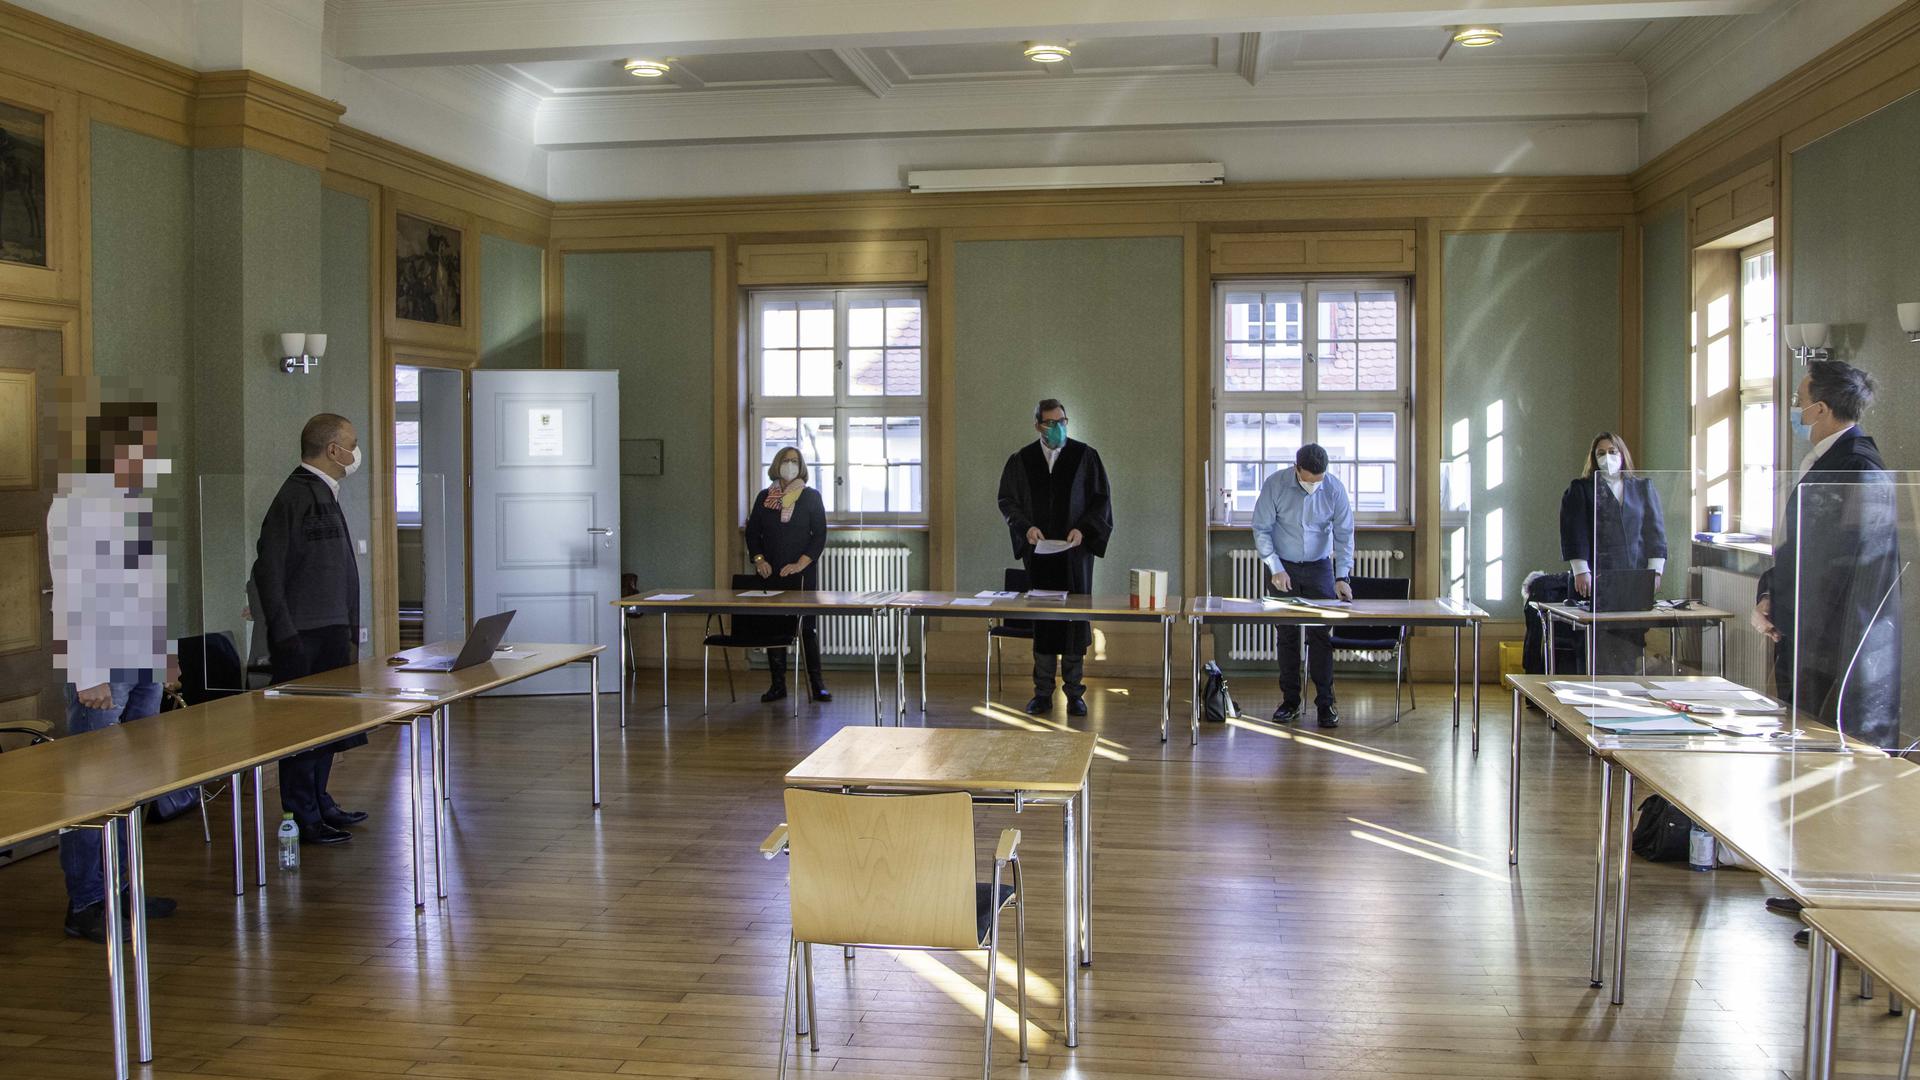 Verhandlung des Amtsgerichts Pforzheim im ehemaligen Ratssaal im Rathaus Dietlingen.